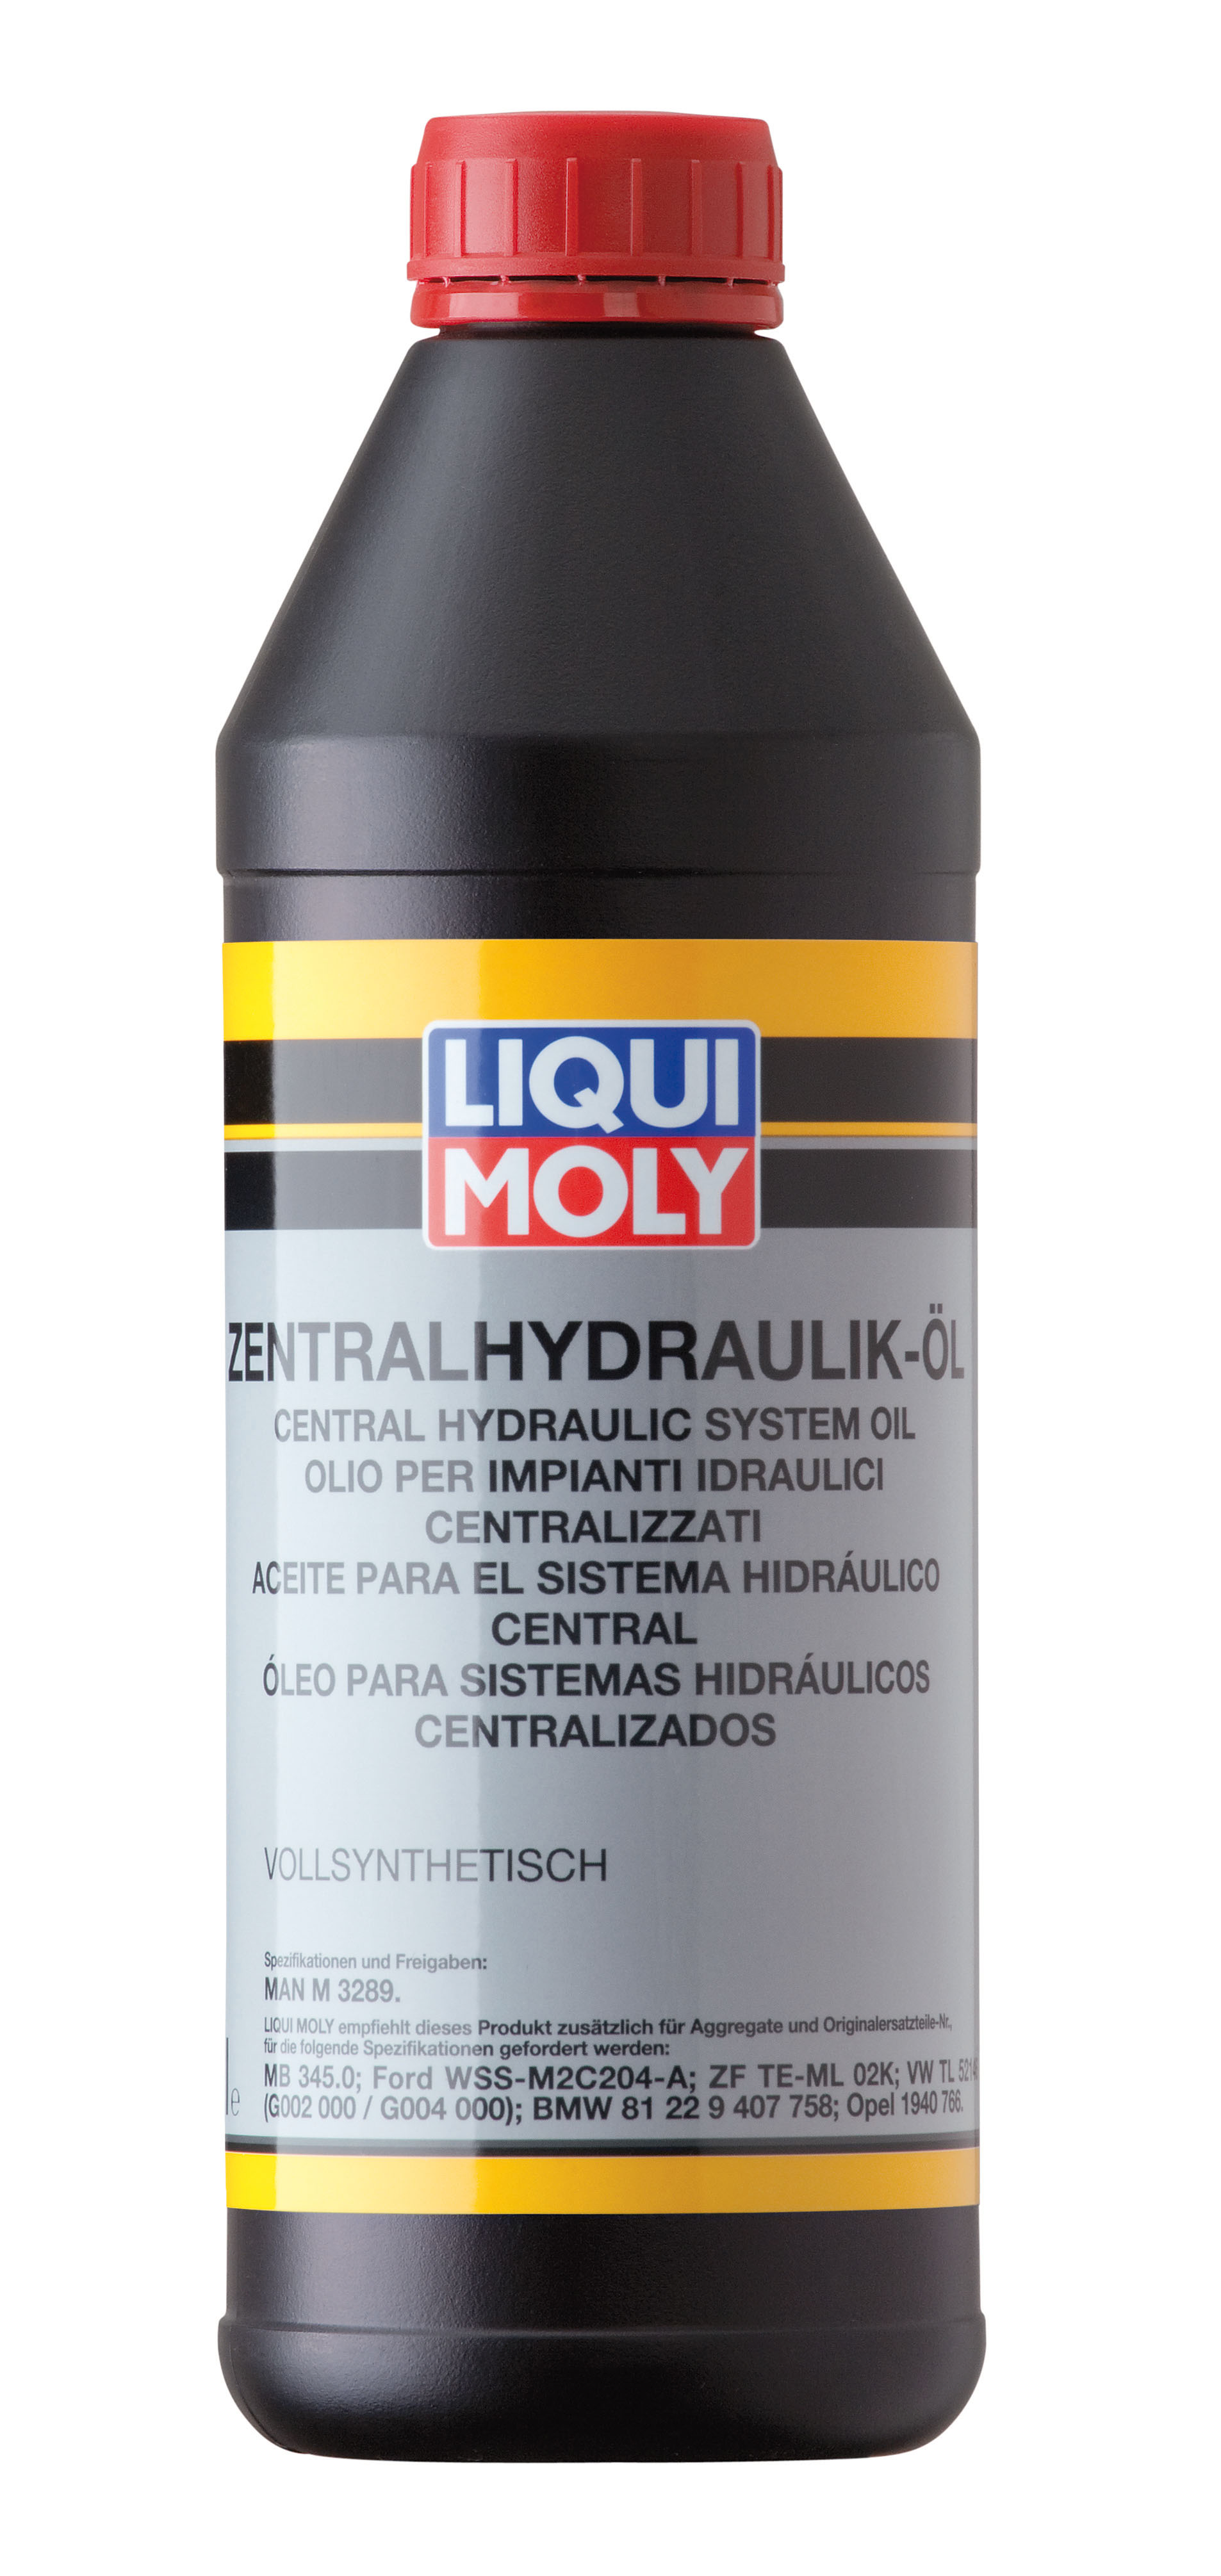 Снят, замена 3978 Жидкость гидравлическая синт. Zentralhydraulik-Oil (1л) - Liqui Moly 1127